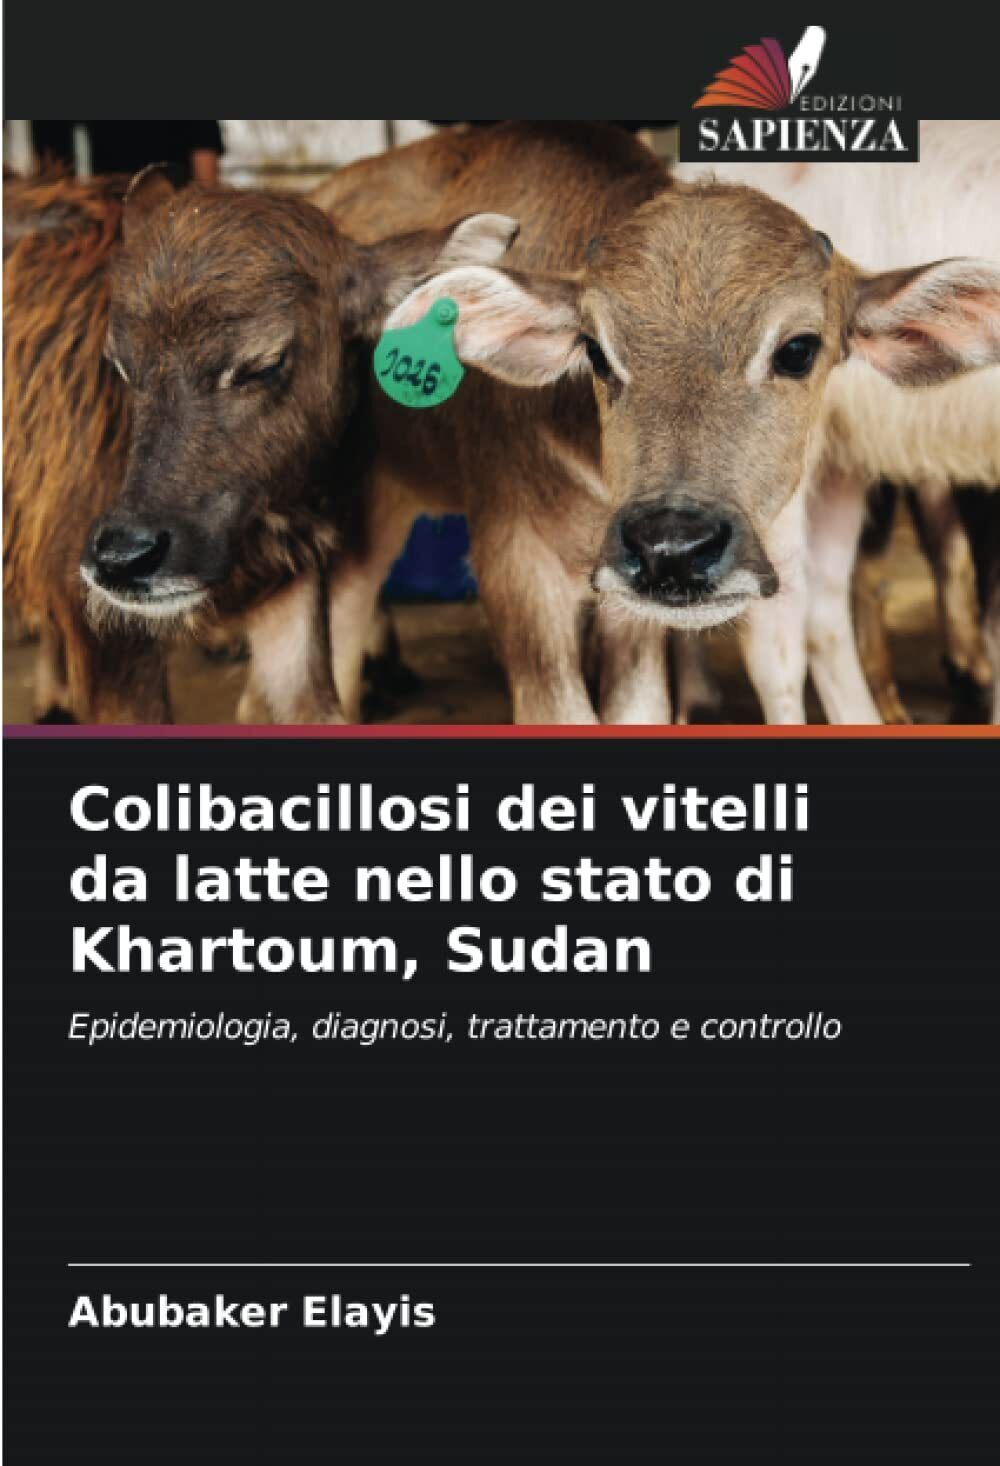 Colibacillosi dei vitelli da latte nello stato di Khartoum, Sudan - 2022